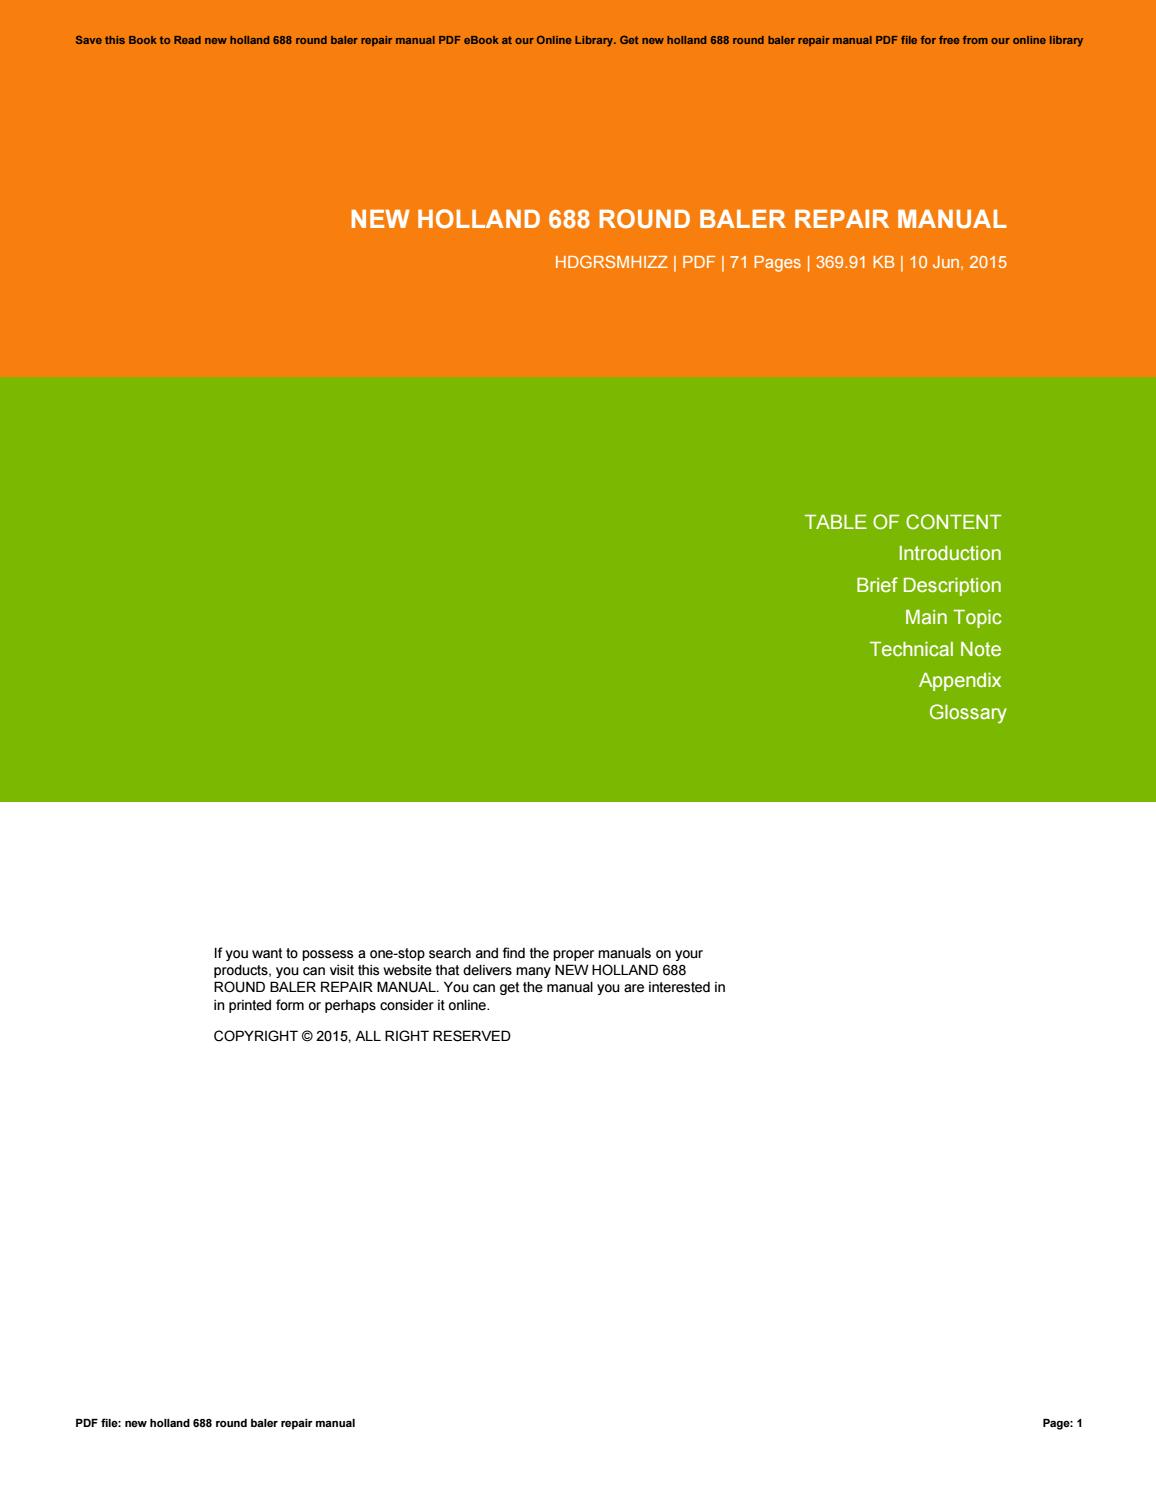 New Holland 688 Baler Service Manual